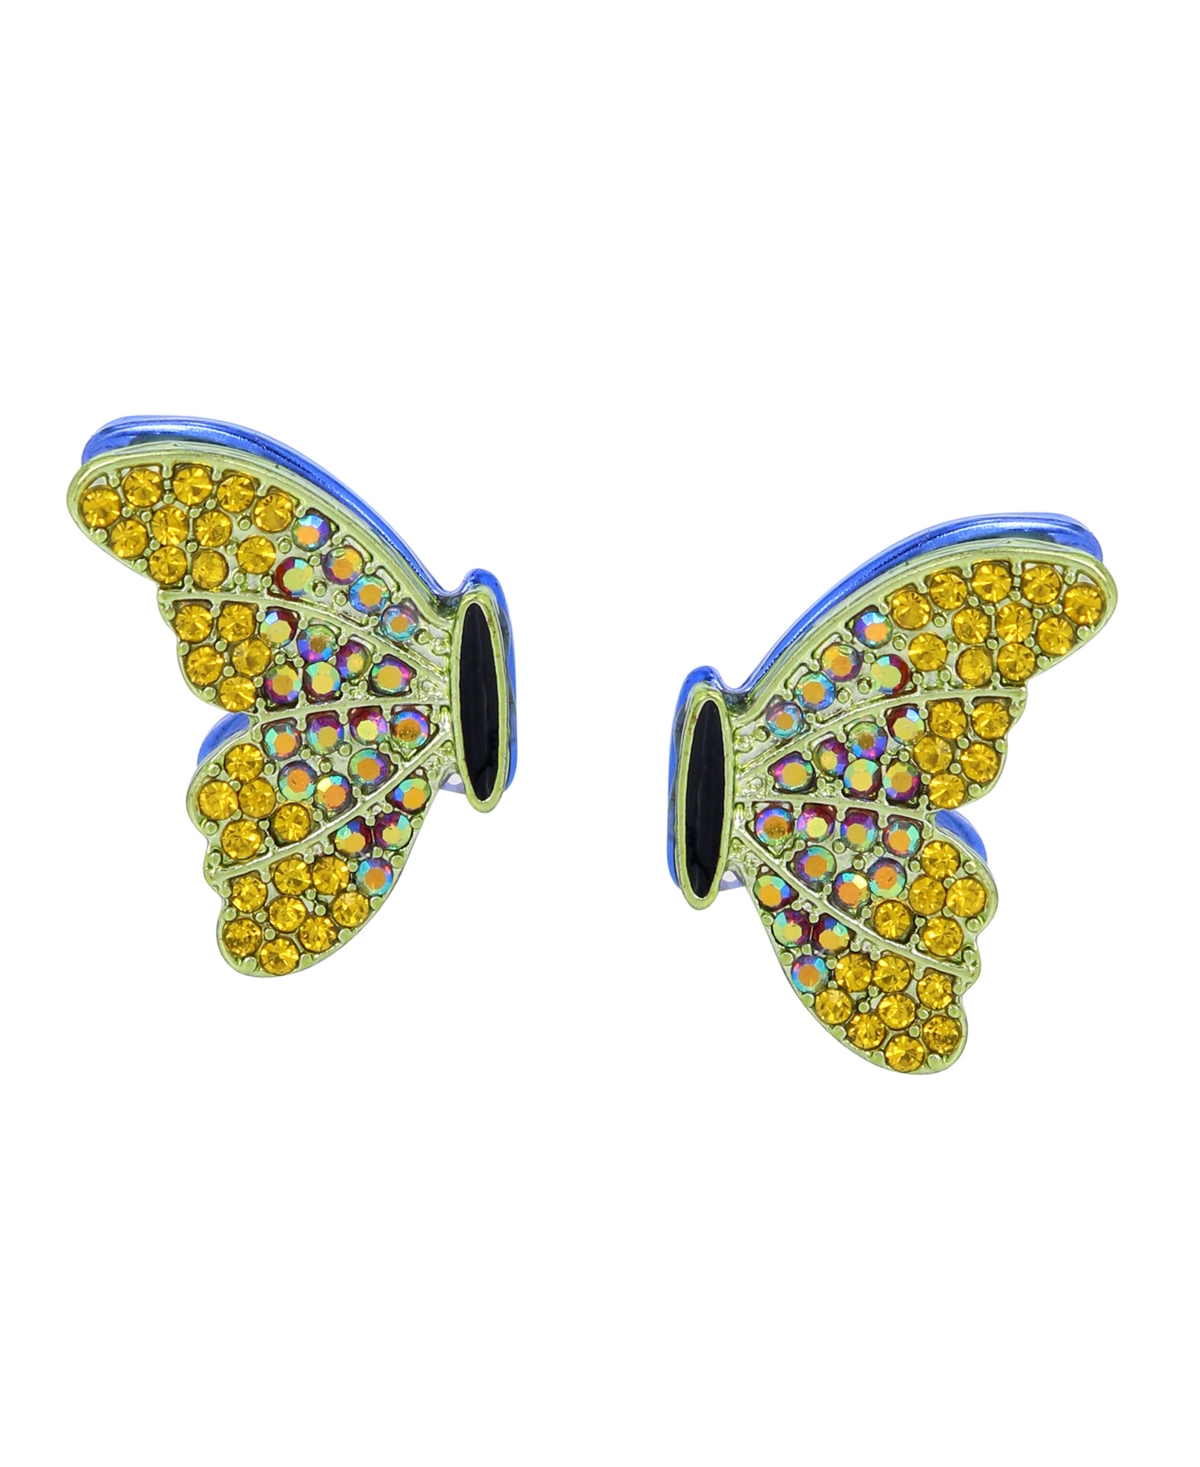 Faux Stone Butterfly Wing Stud Earrings - Green, Gold